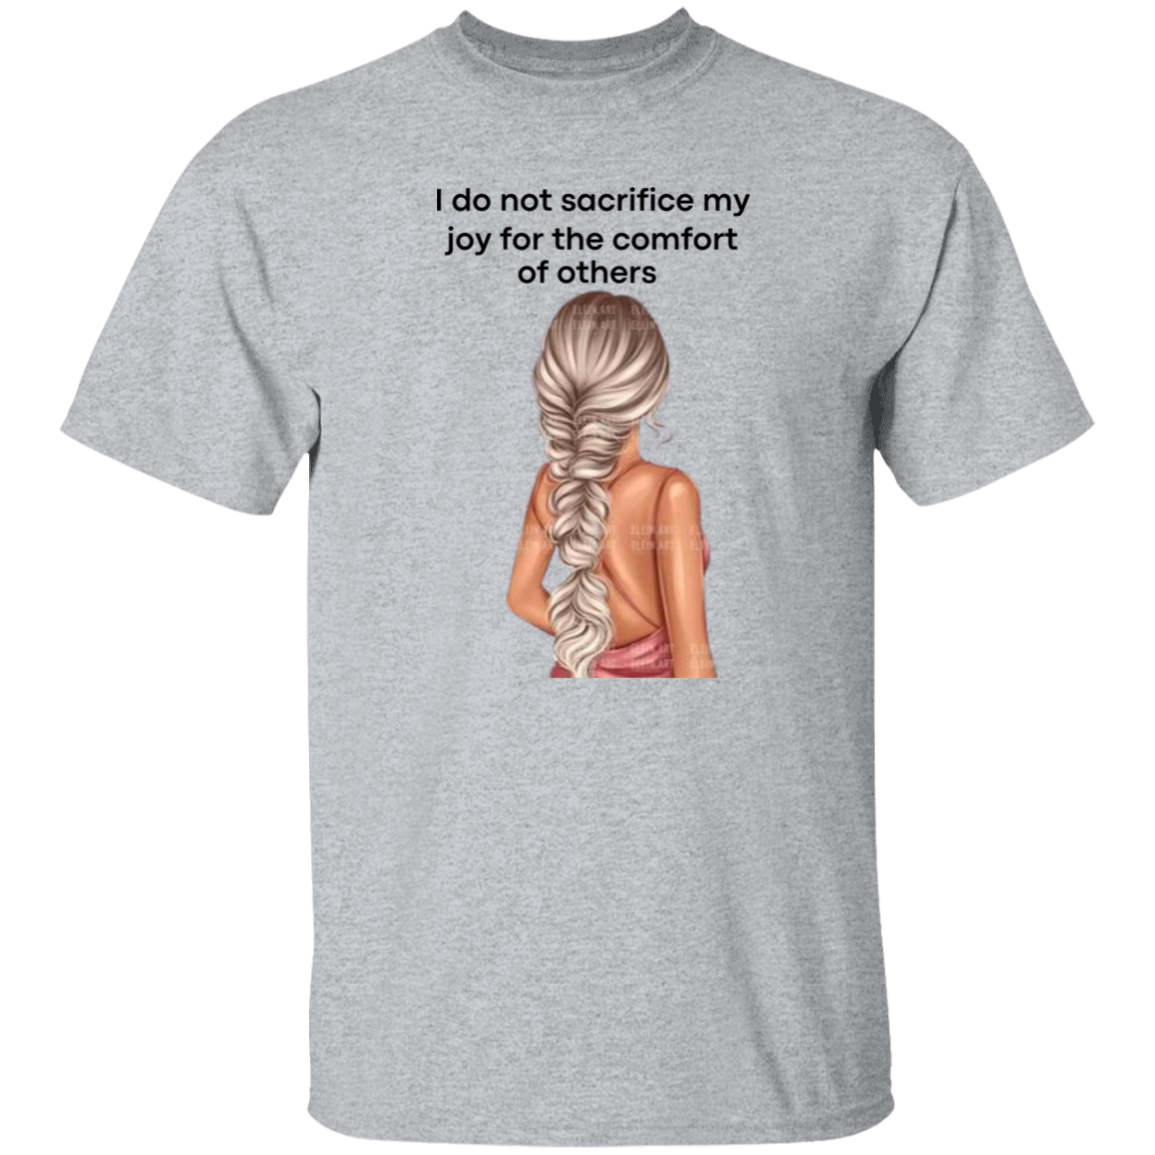 I do not sacrifice my joy 5.3 oz. T-Shirt